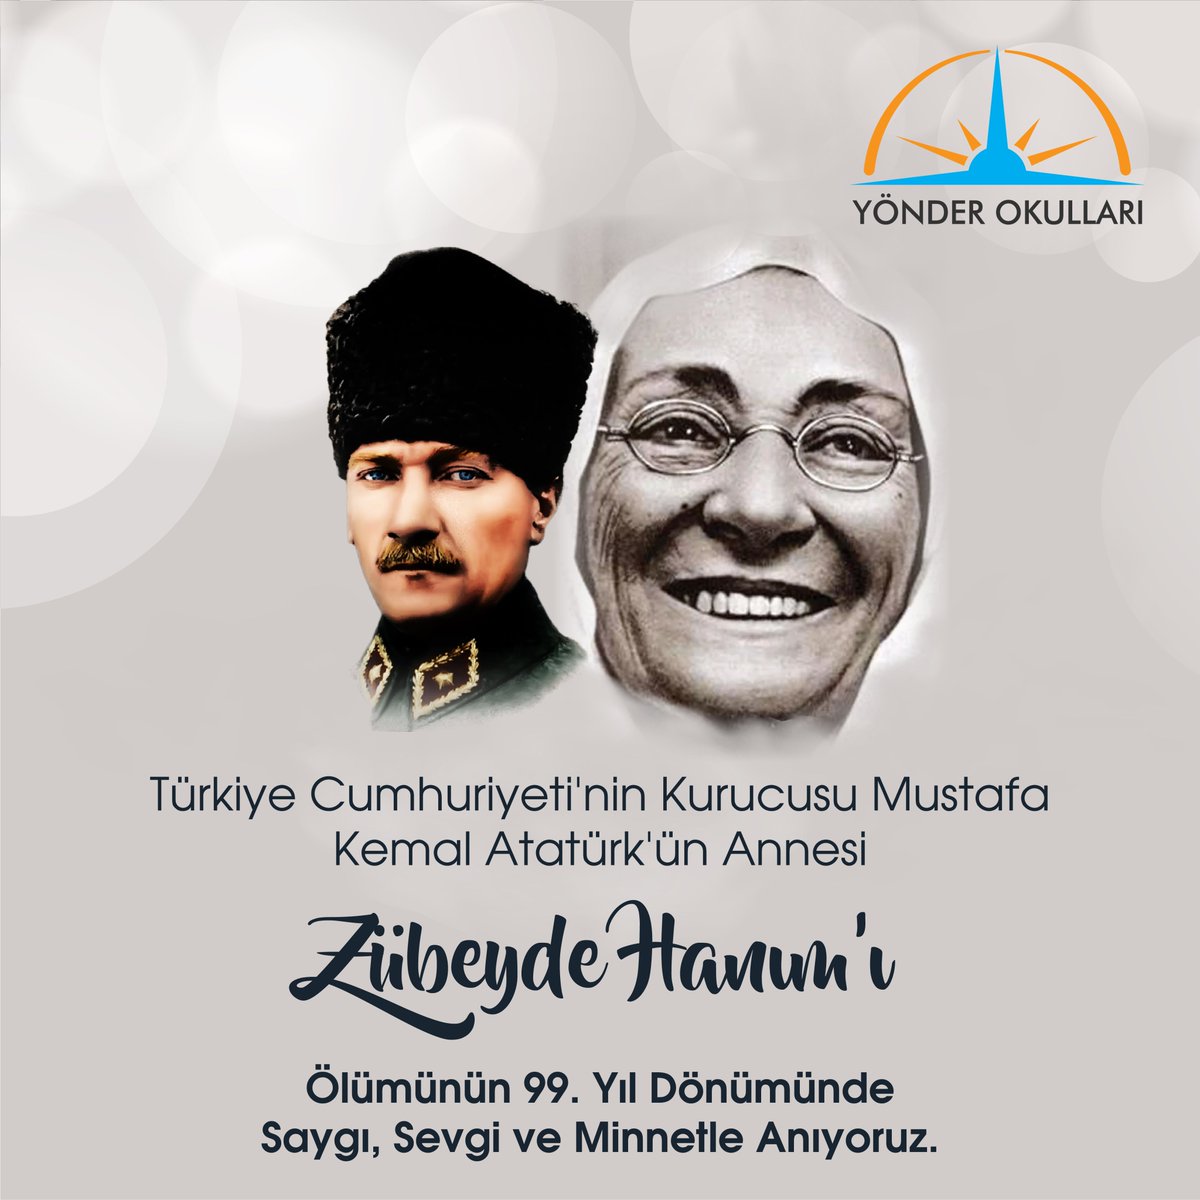 Türkiye Cumhuriyeti'nin Kurucusu Mustafa Kemal Atatürk'ün annesi Zübeyde Hanım’ı ölümünün 99.yıl dönümünde saygı, sevgi ve minnetle anıyoruz.
#zübeydehanım #atatürk #yarınlarasözümüzvar  #yönderokulları #maltepeyönderokulları #ustundokmenakademi #anaokulu #ilkokul #ortaokul #lise